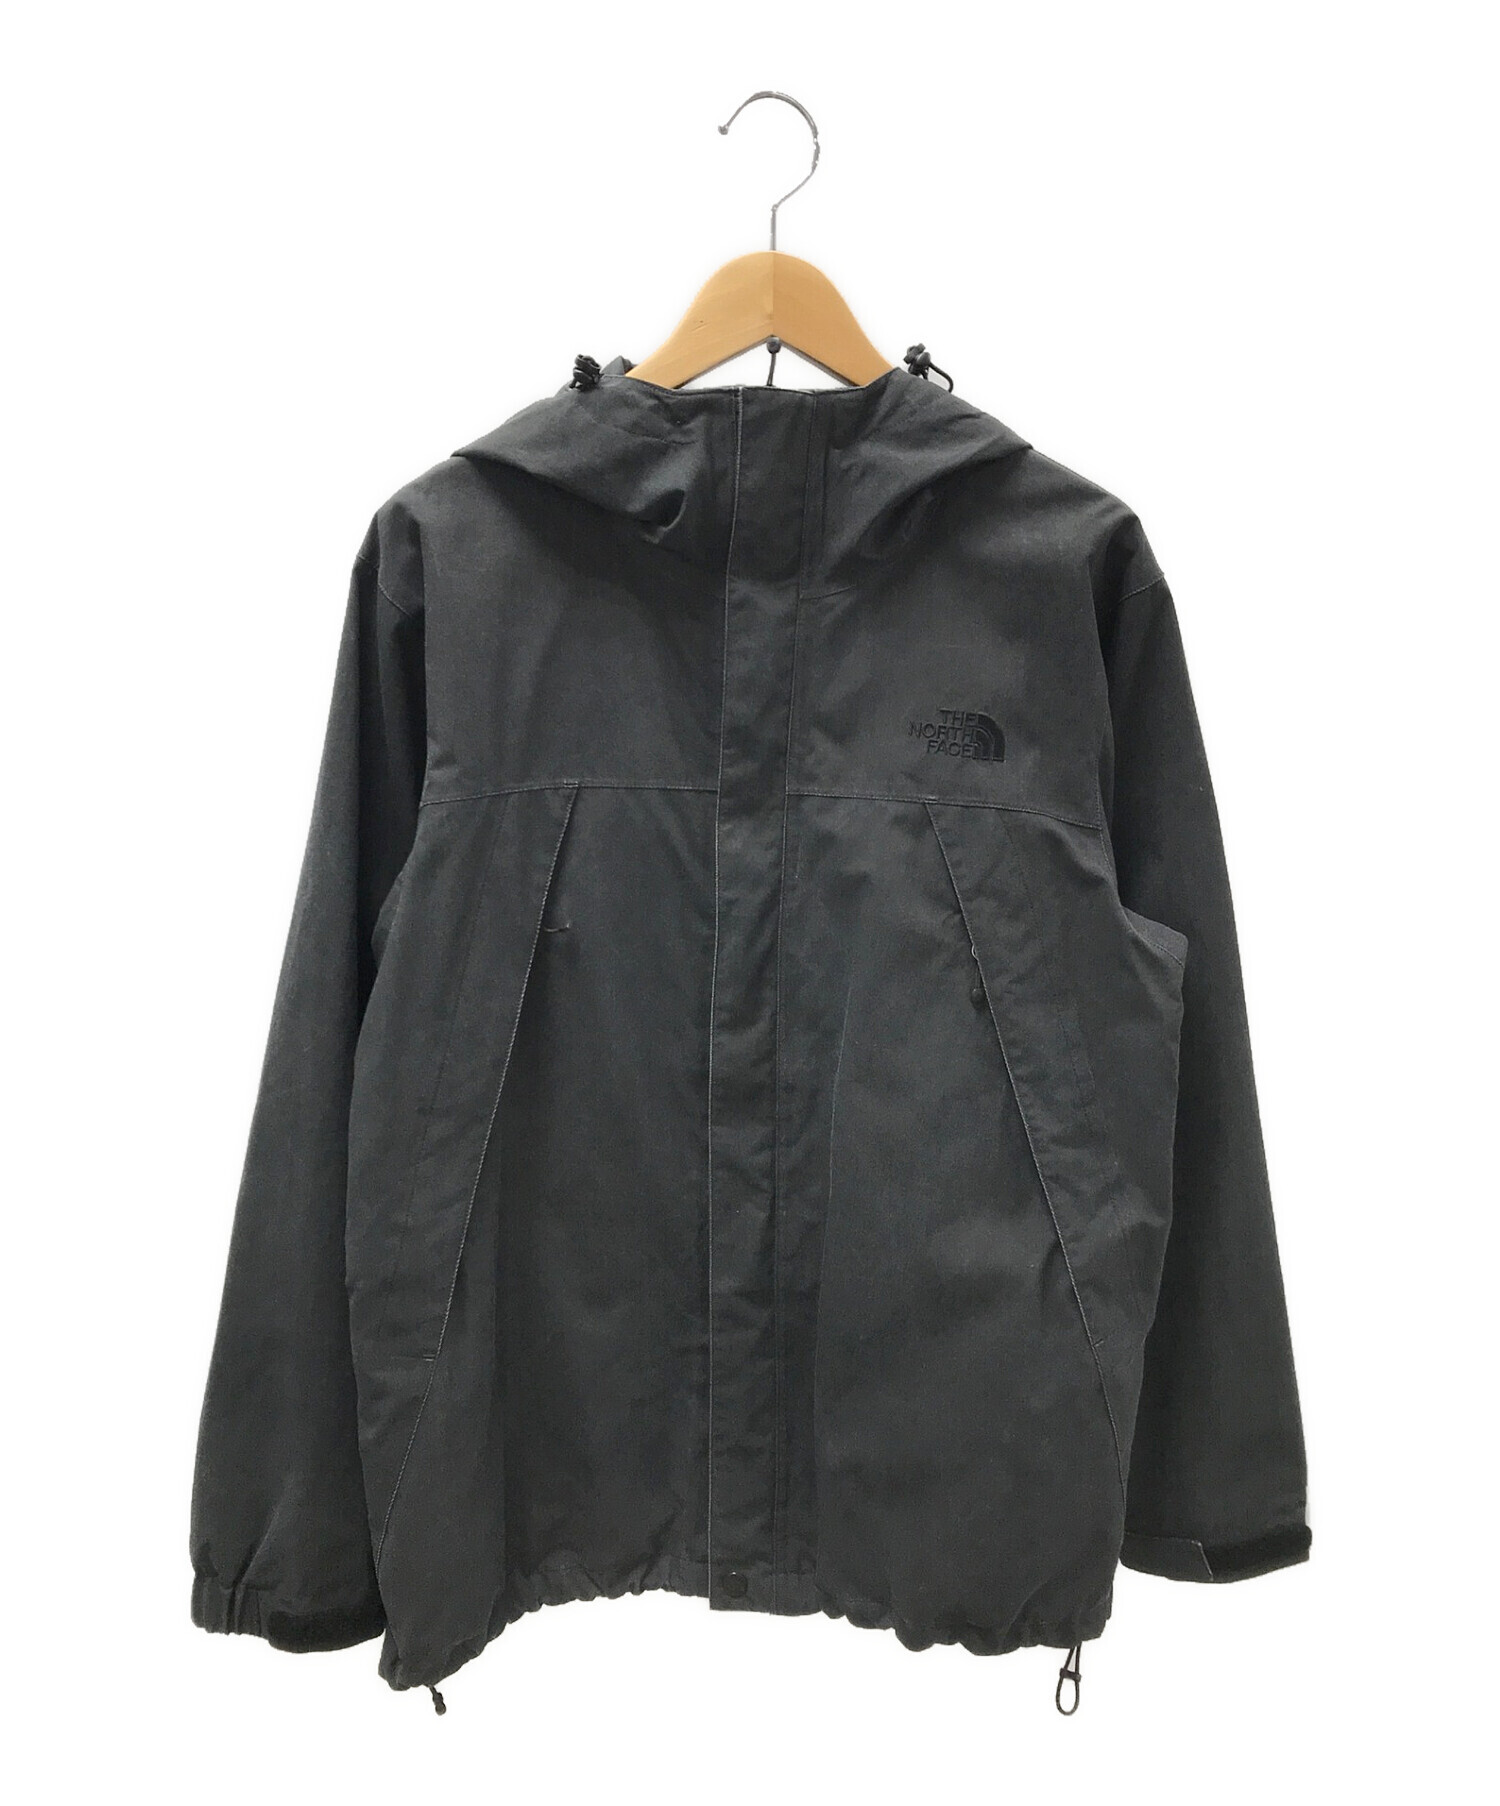 美しい価格 novelty scoop jacket | artfive.co.jp